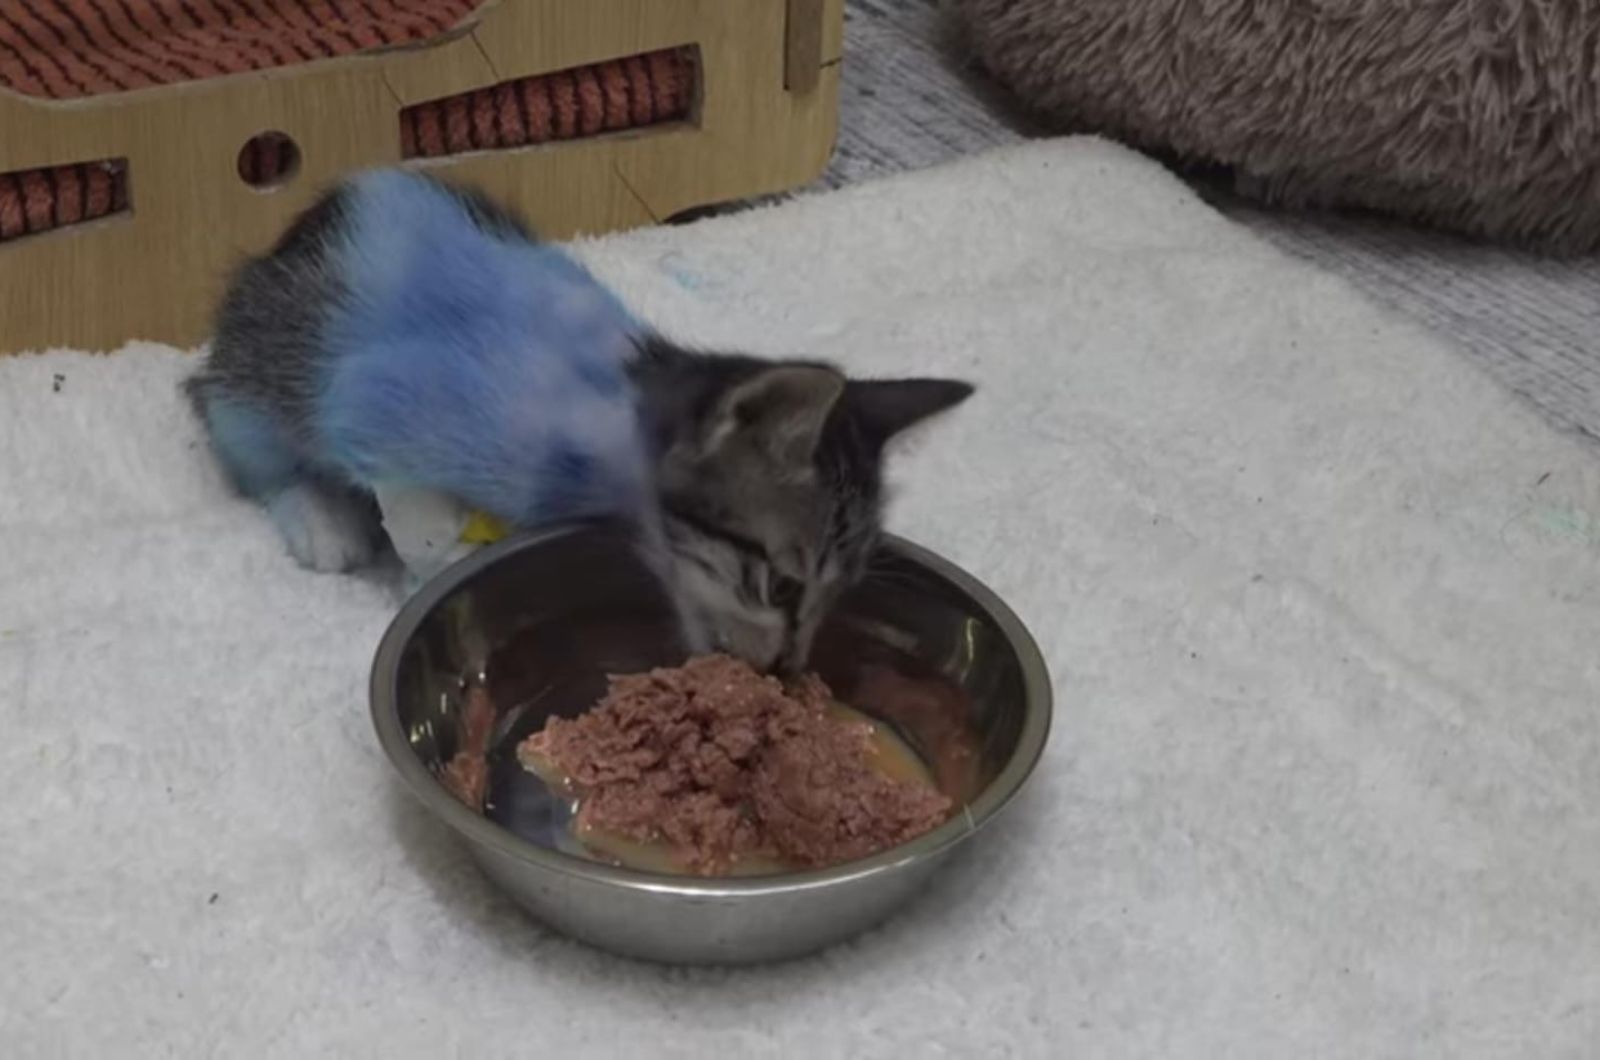 rescued kitten eating